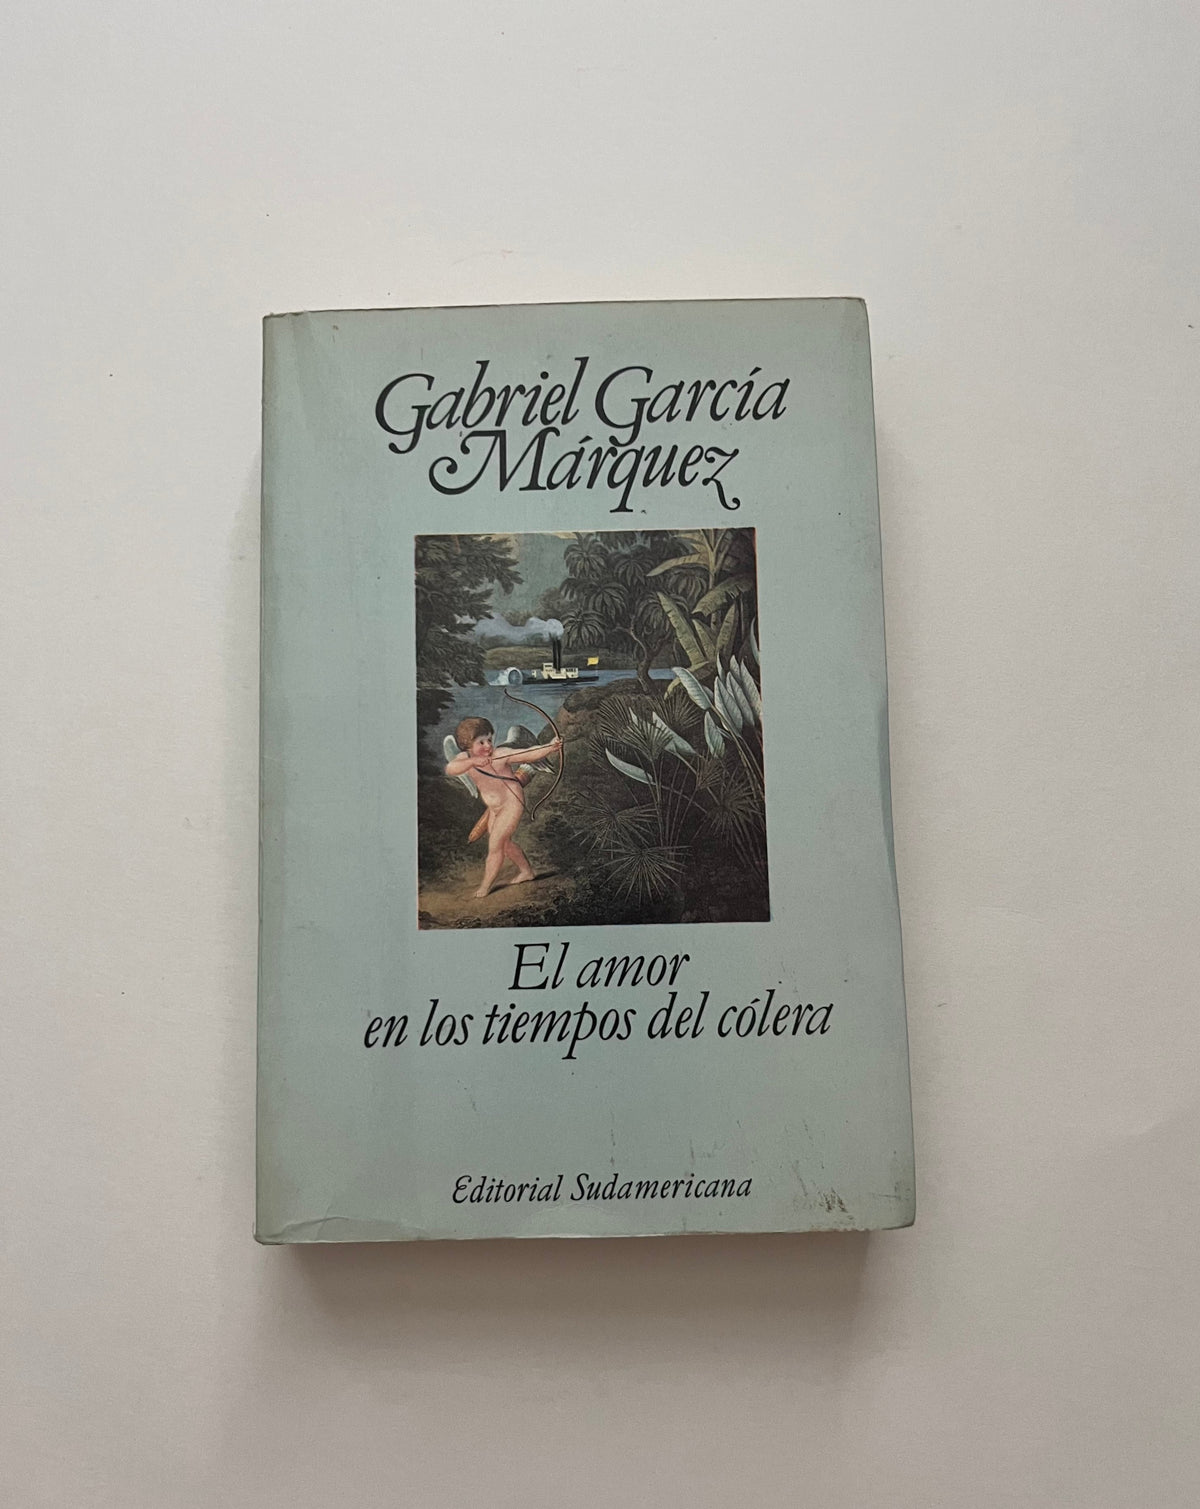 El Amor en los Tiempos del Colera por Gabriel Garcia Marquez